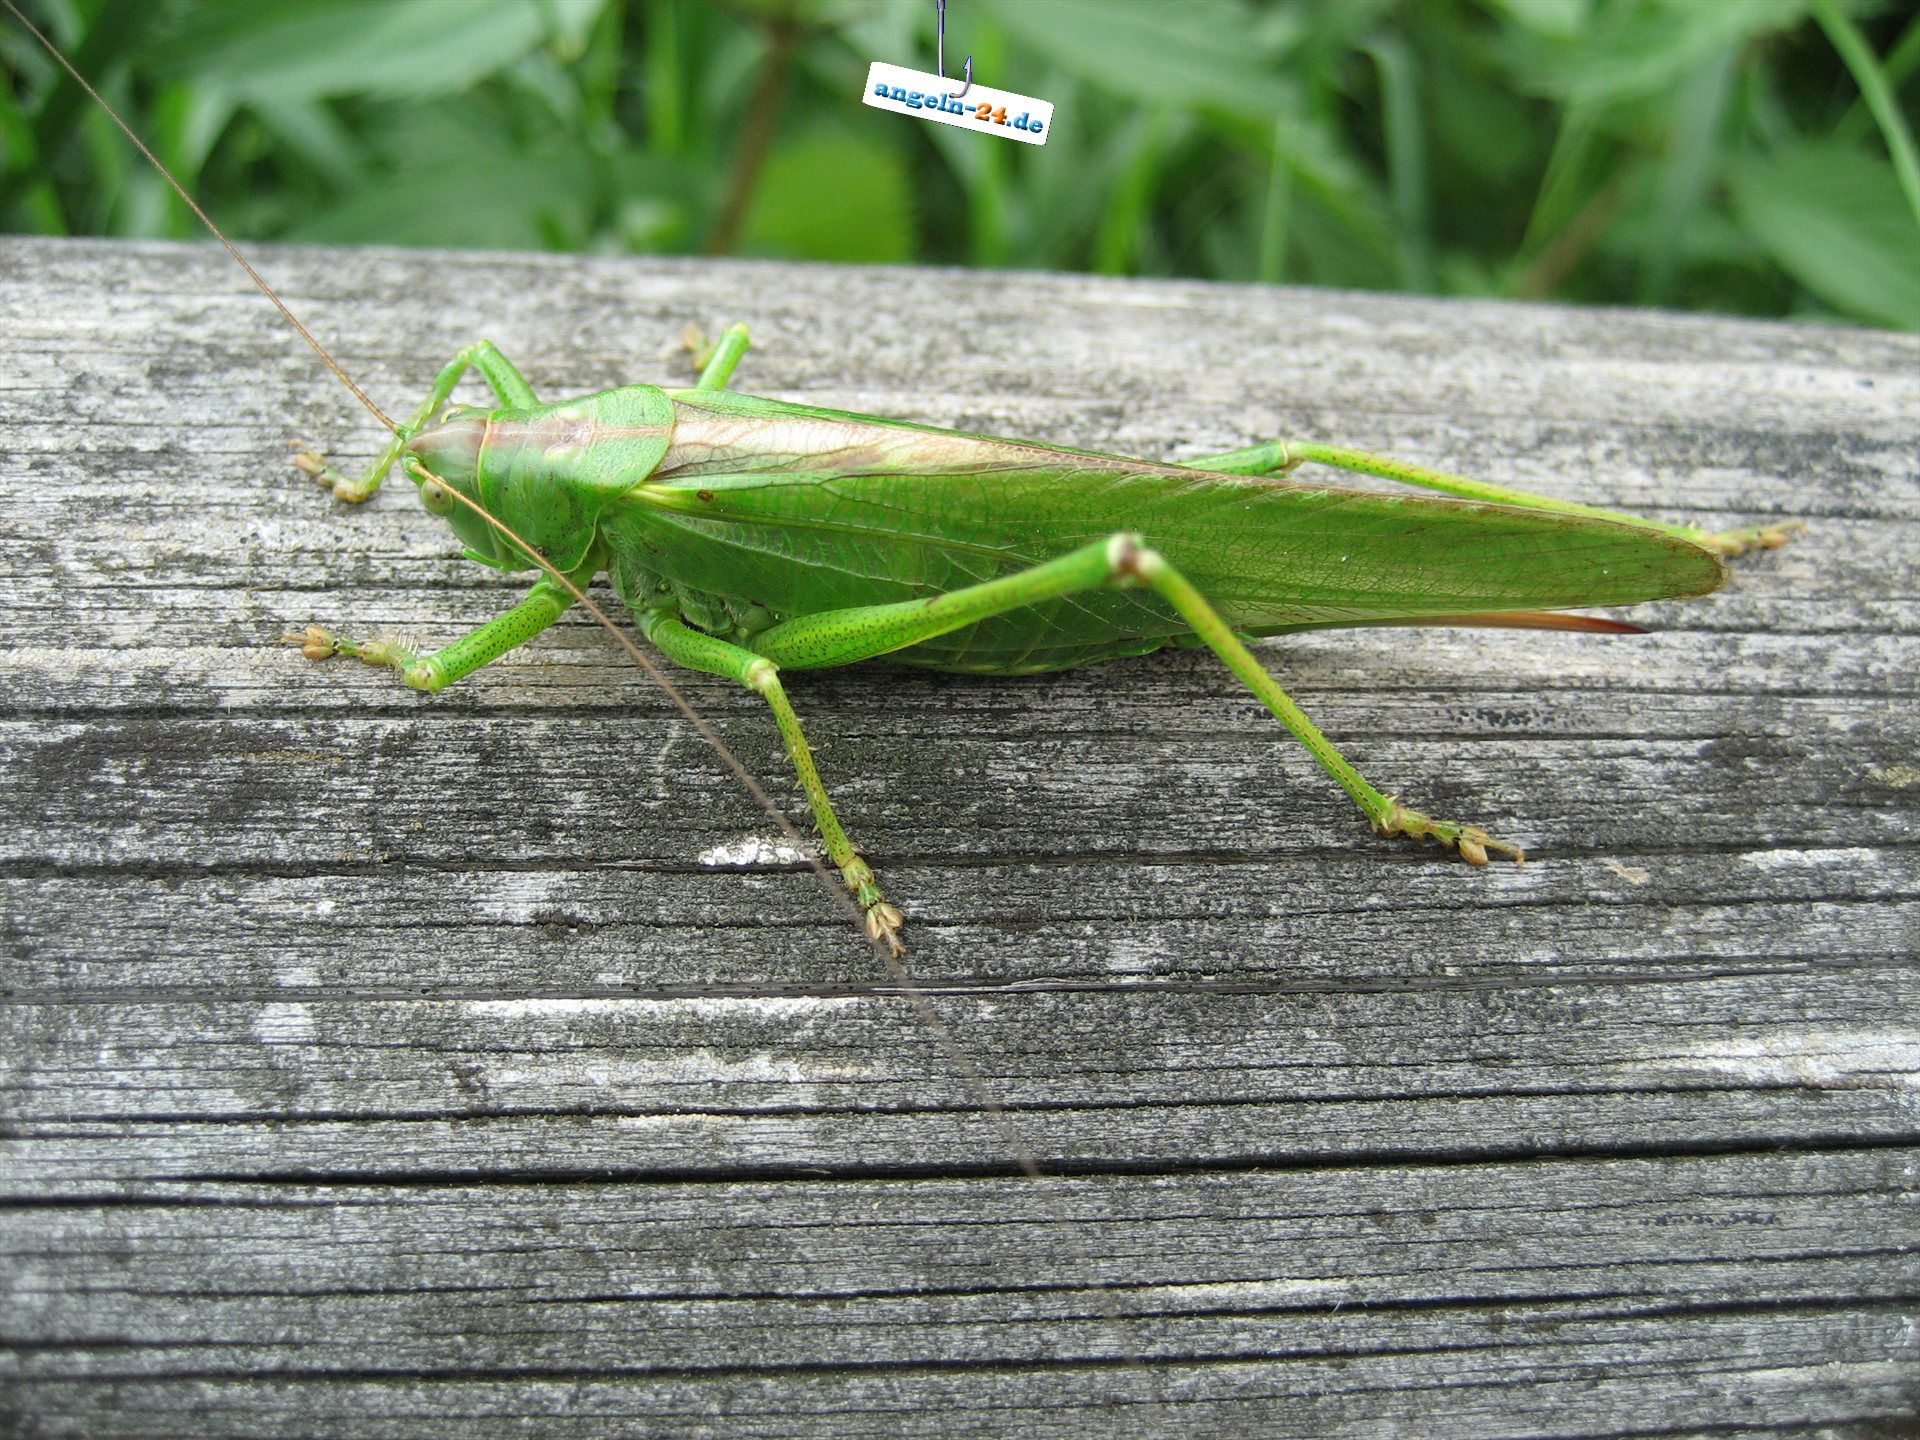 Fullhd - Grasshopper , HD Wallpaper & Backgrounds